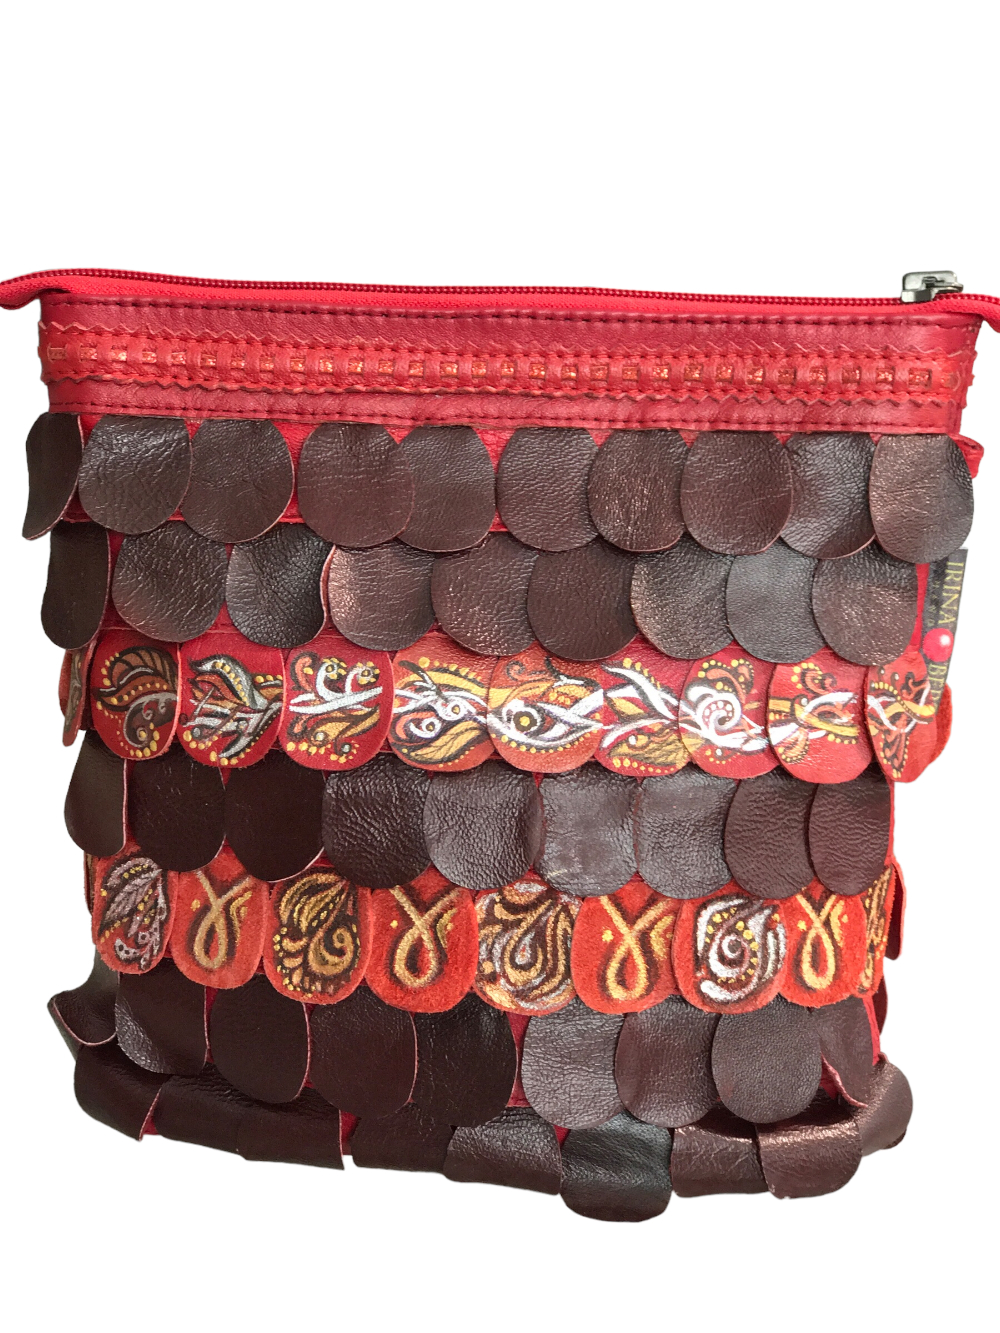 картинка кожаные  "Русалка-24" - Женская кожаная сумка с росписью красками, красная от Ирины Берзиной